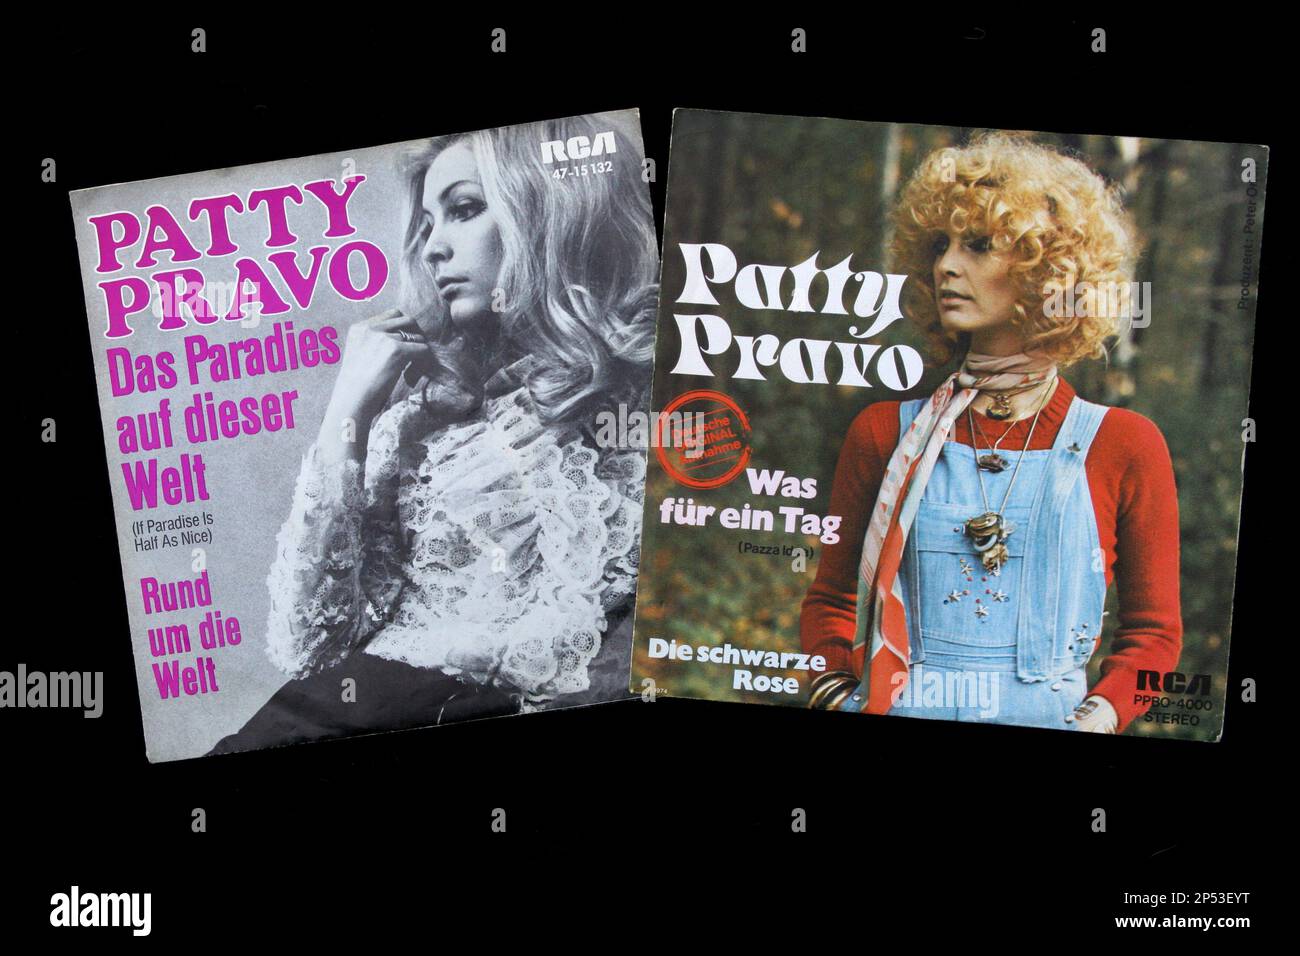 Due edizioni tedesche 45 rpm vynil records del celebre cantante pop italiano PATTY PRAVO degli anni '60 e '70 - MUSICA POP - MUSICA - copertine - copertine - 45 giri - dischi - vinile - cantante - camp - gay icon - LGBT - collezione - collegionismo ---- Archivio GBB Foto Stock